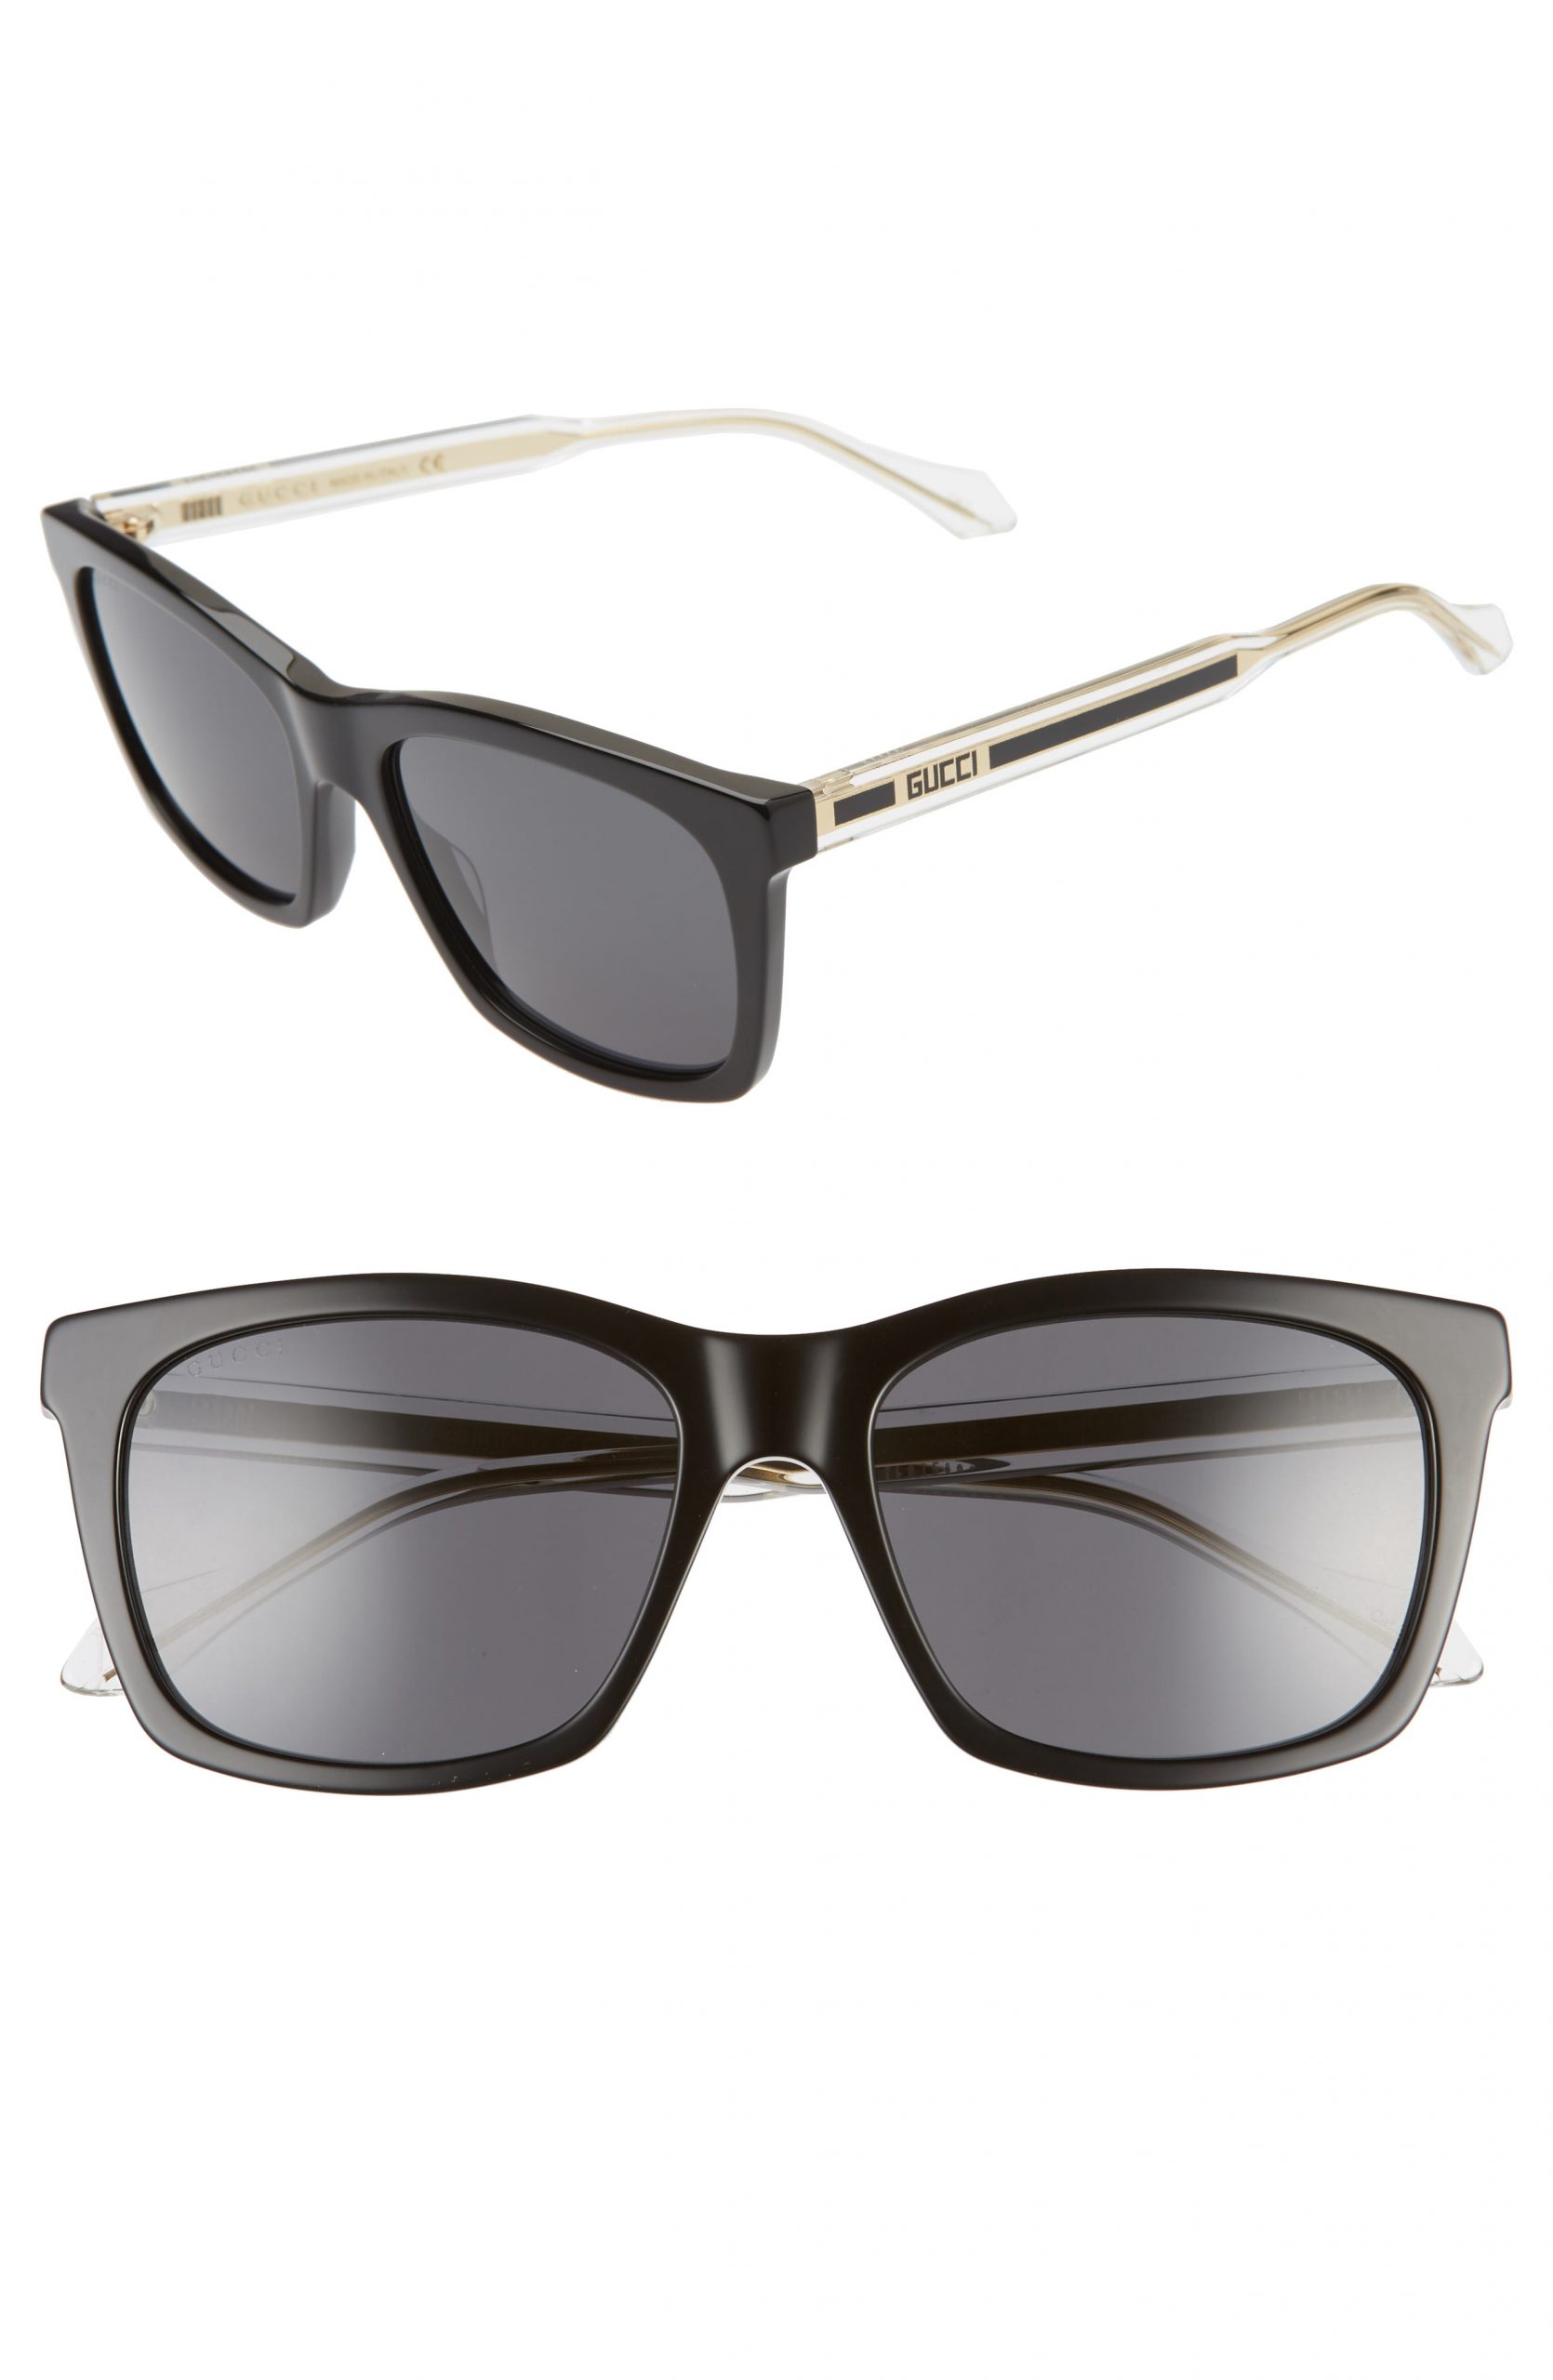 gucci men's sunglasses